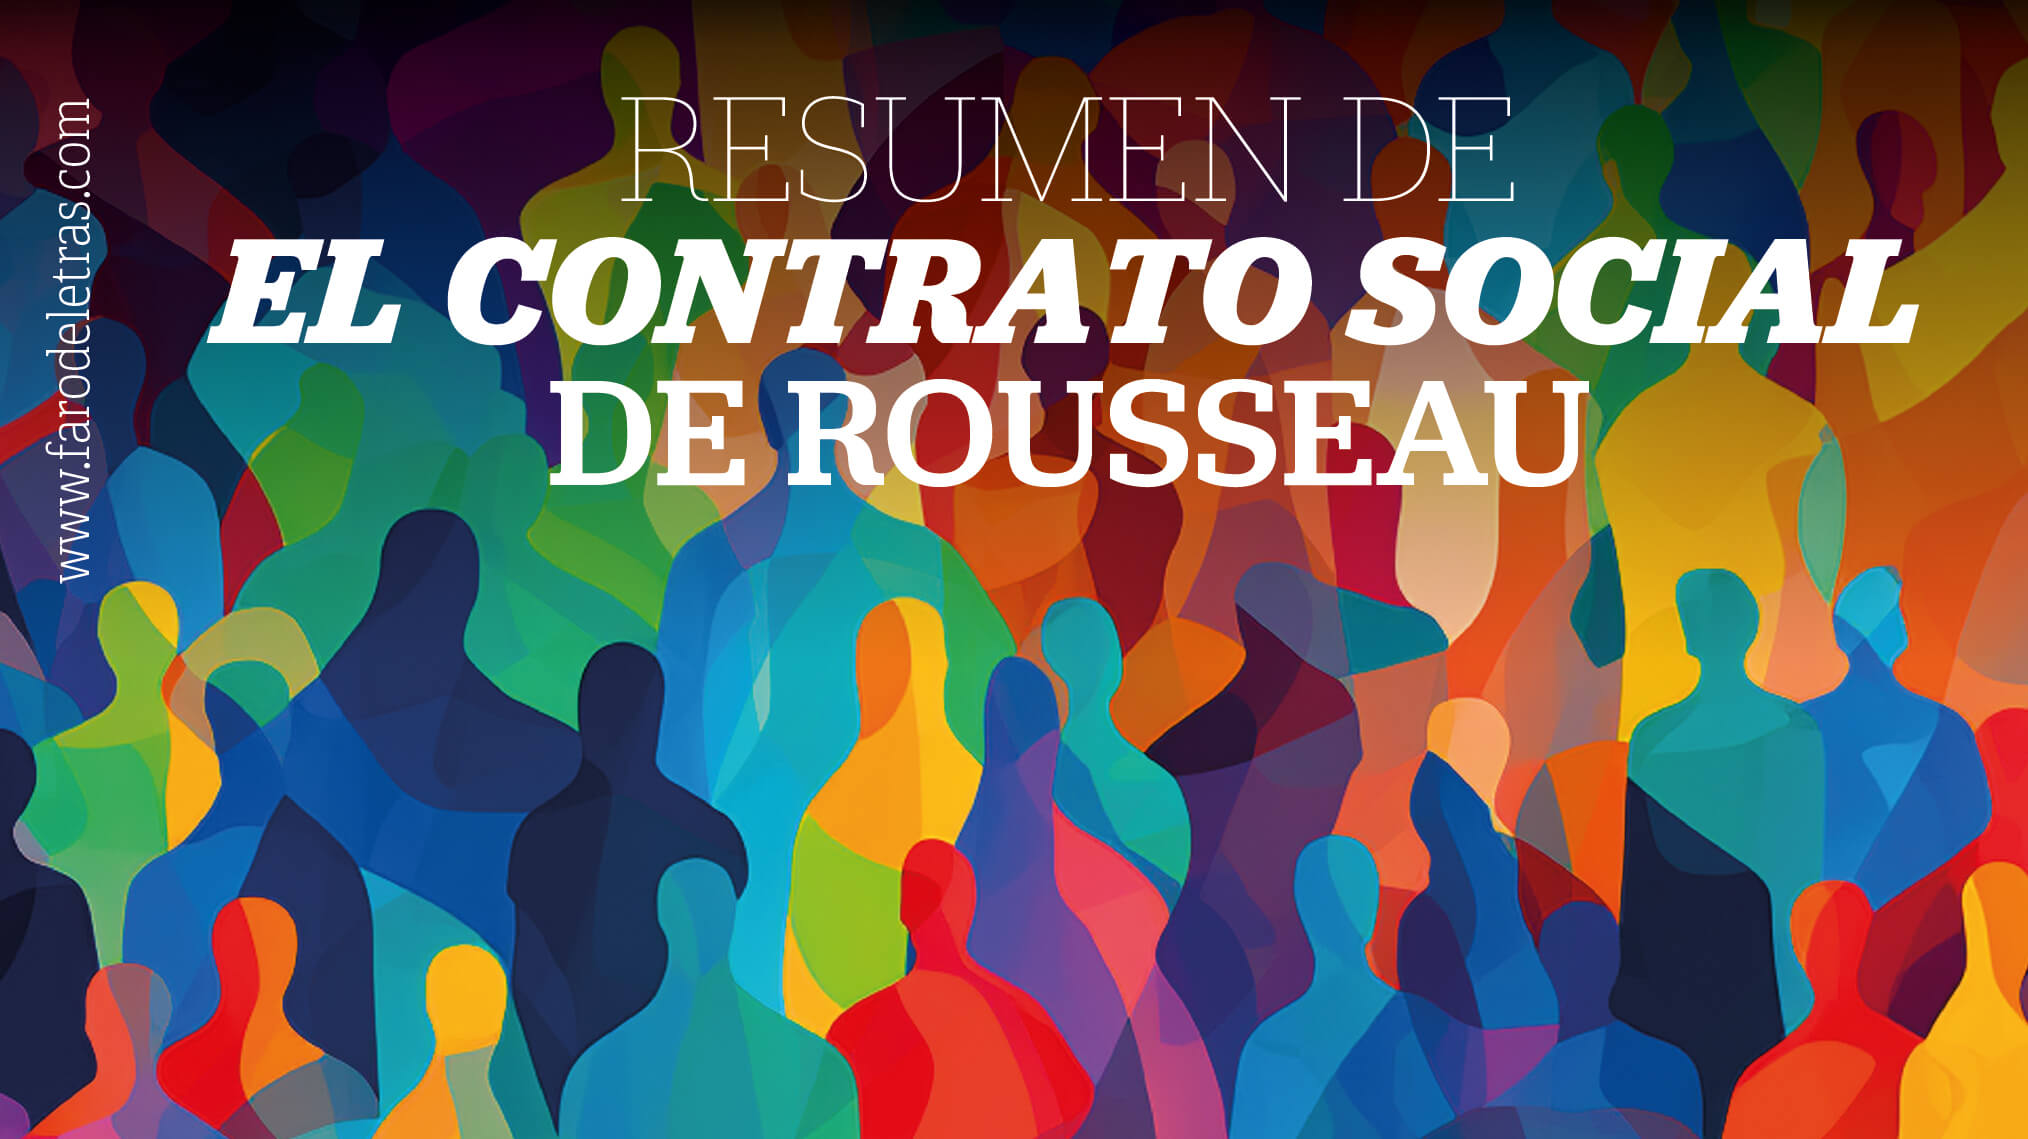 Resumen de EL CONTRATO SOCIAL de Rousseau